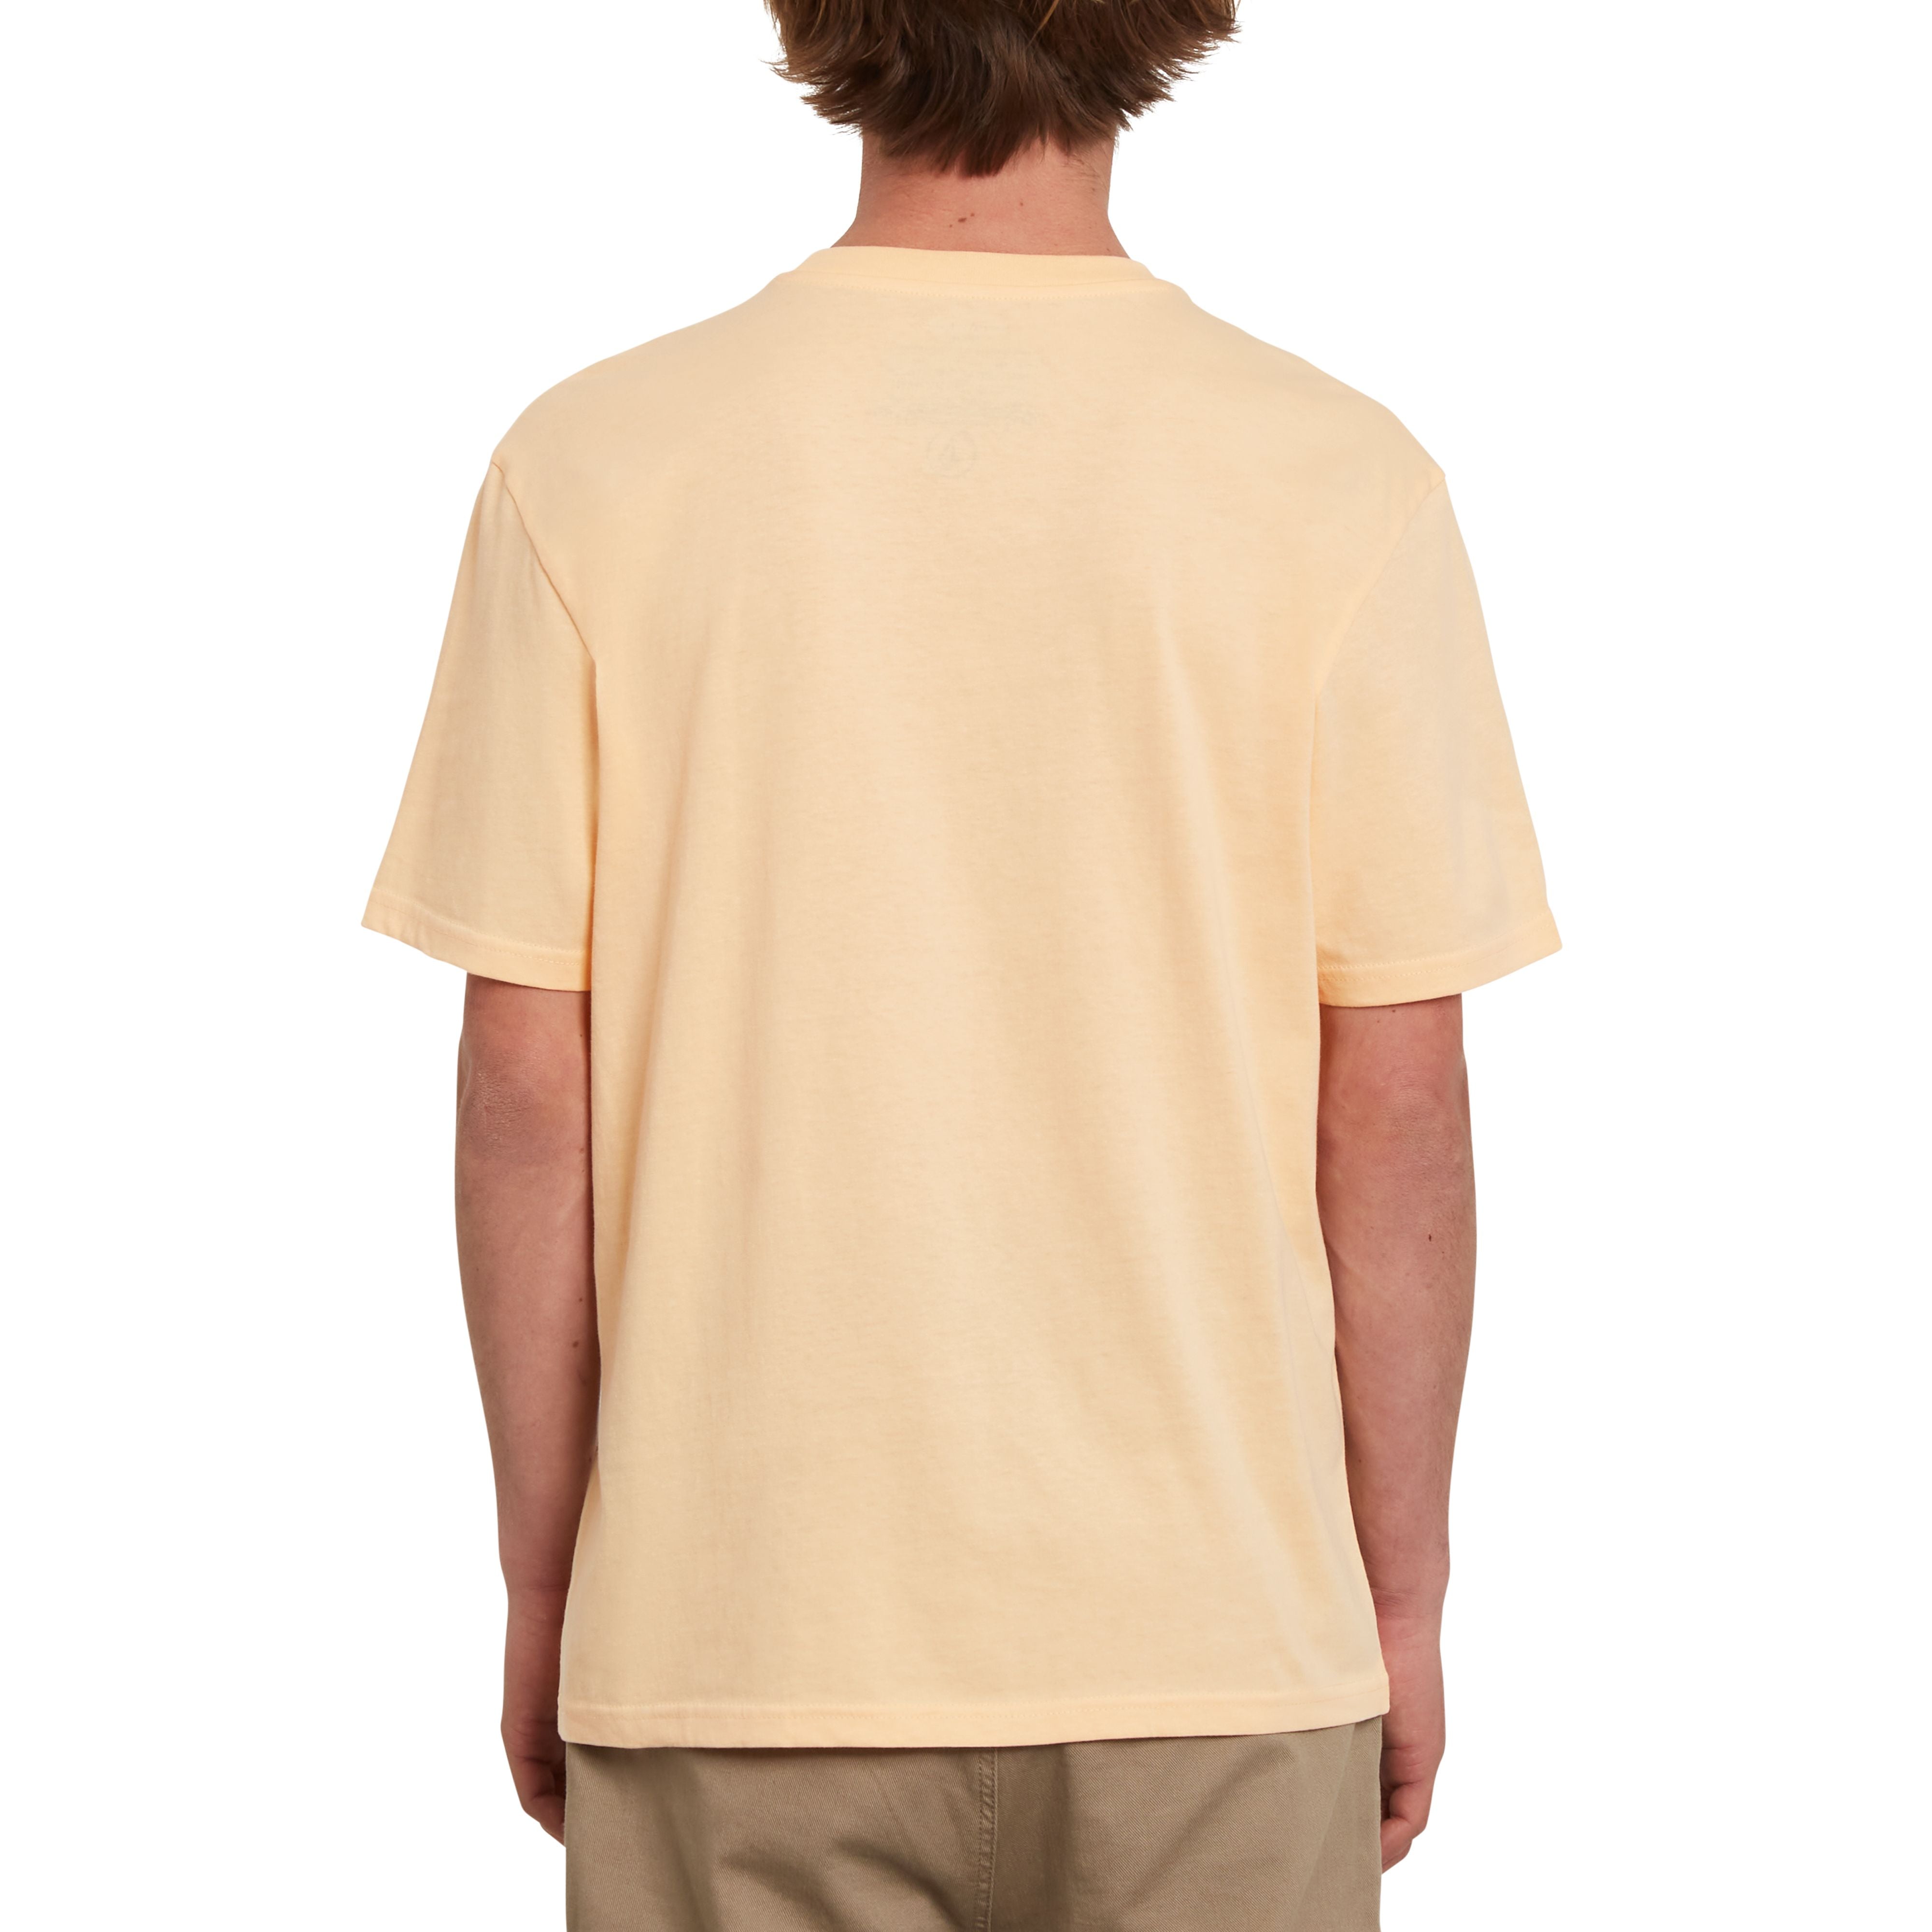 Schlichtes Volcom T-Shirt in färbe Cream Blush mit kleiner Volcom Stickerei über dem Herzen aus 100% Bio Baumwolle.